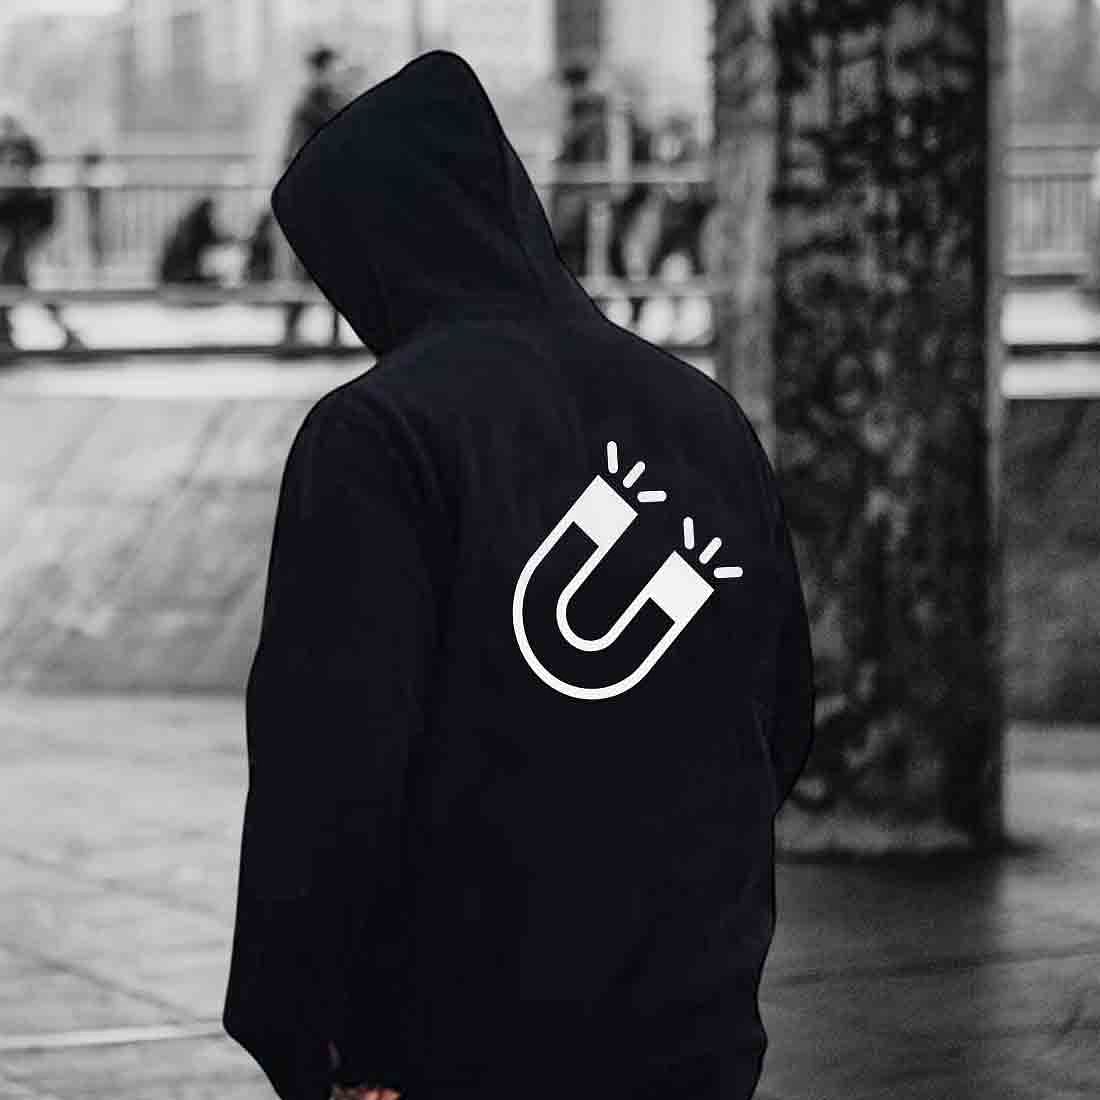 Buy Nutcase Designer hoodies for men stylish hoodie sweatshirt Unisex  Online India